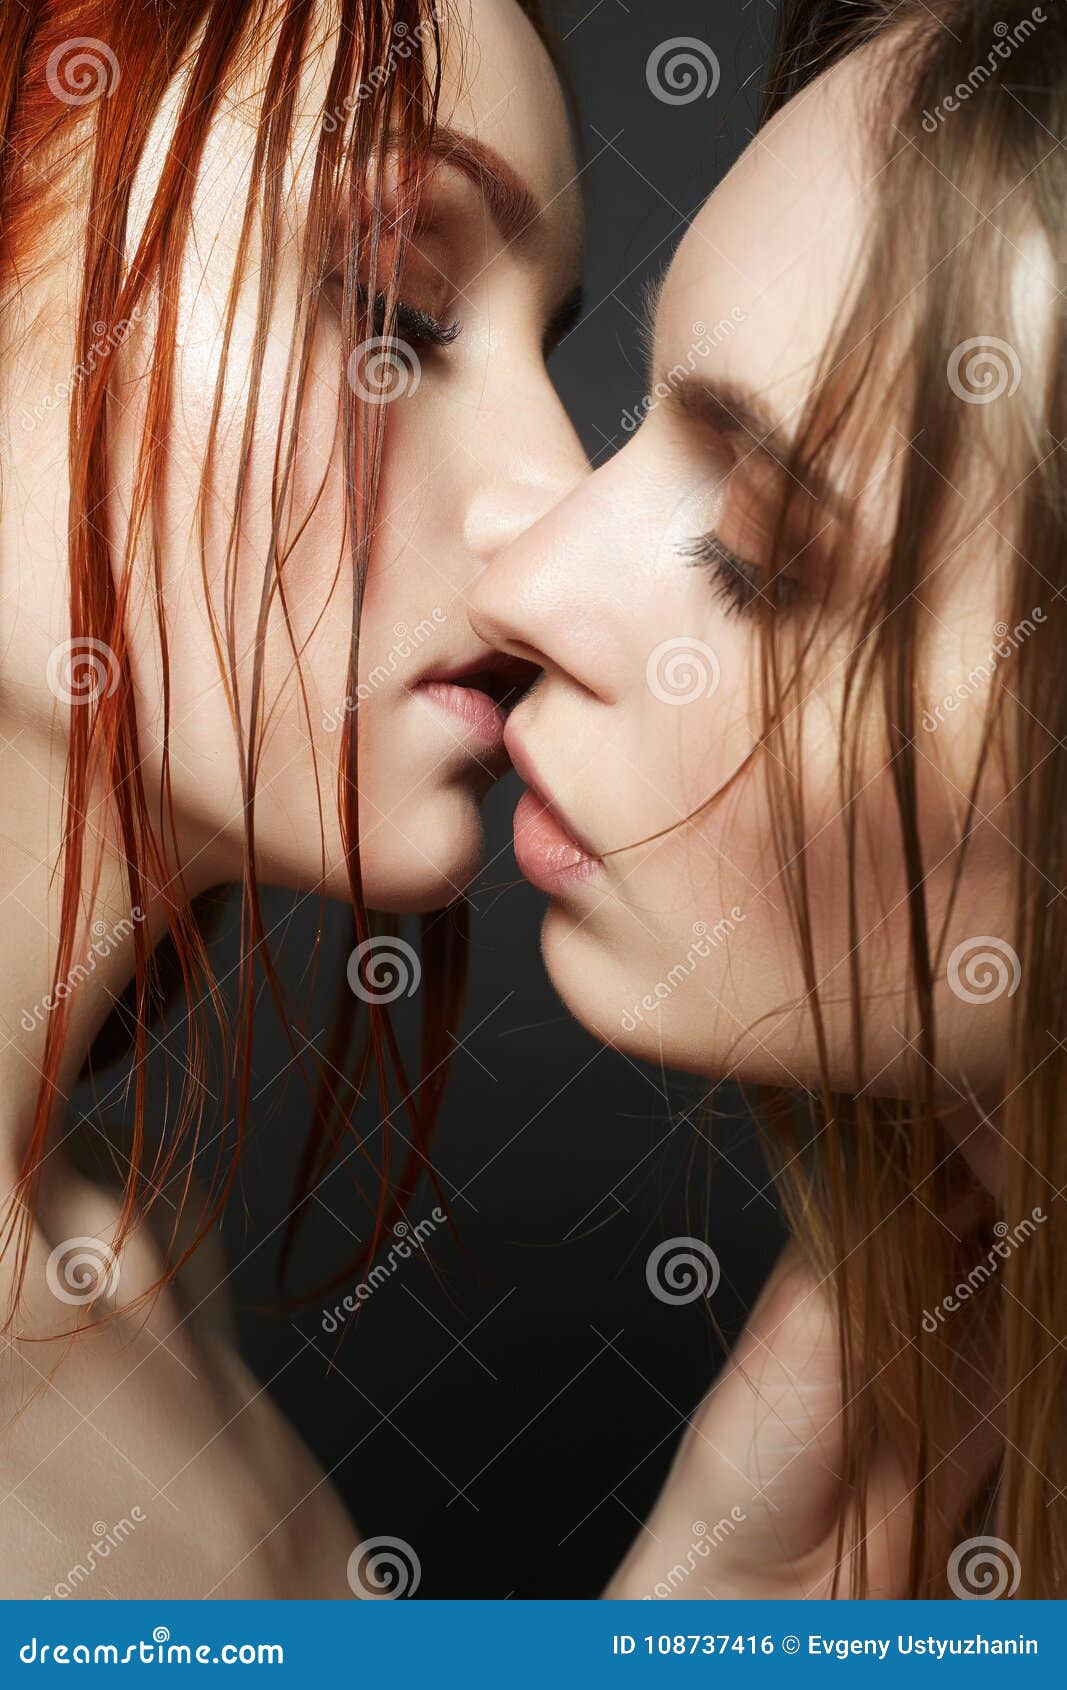 считается ли изменой когда девушка с девушкой целуются фото 82